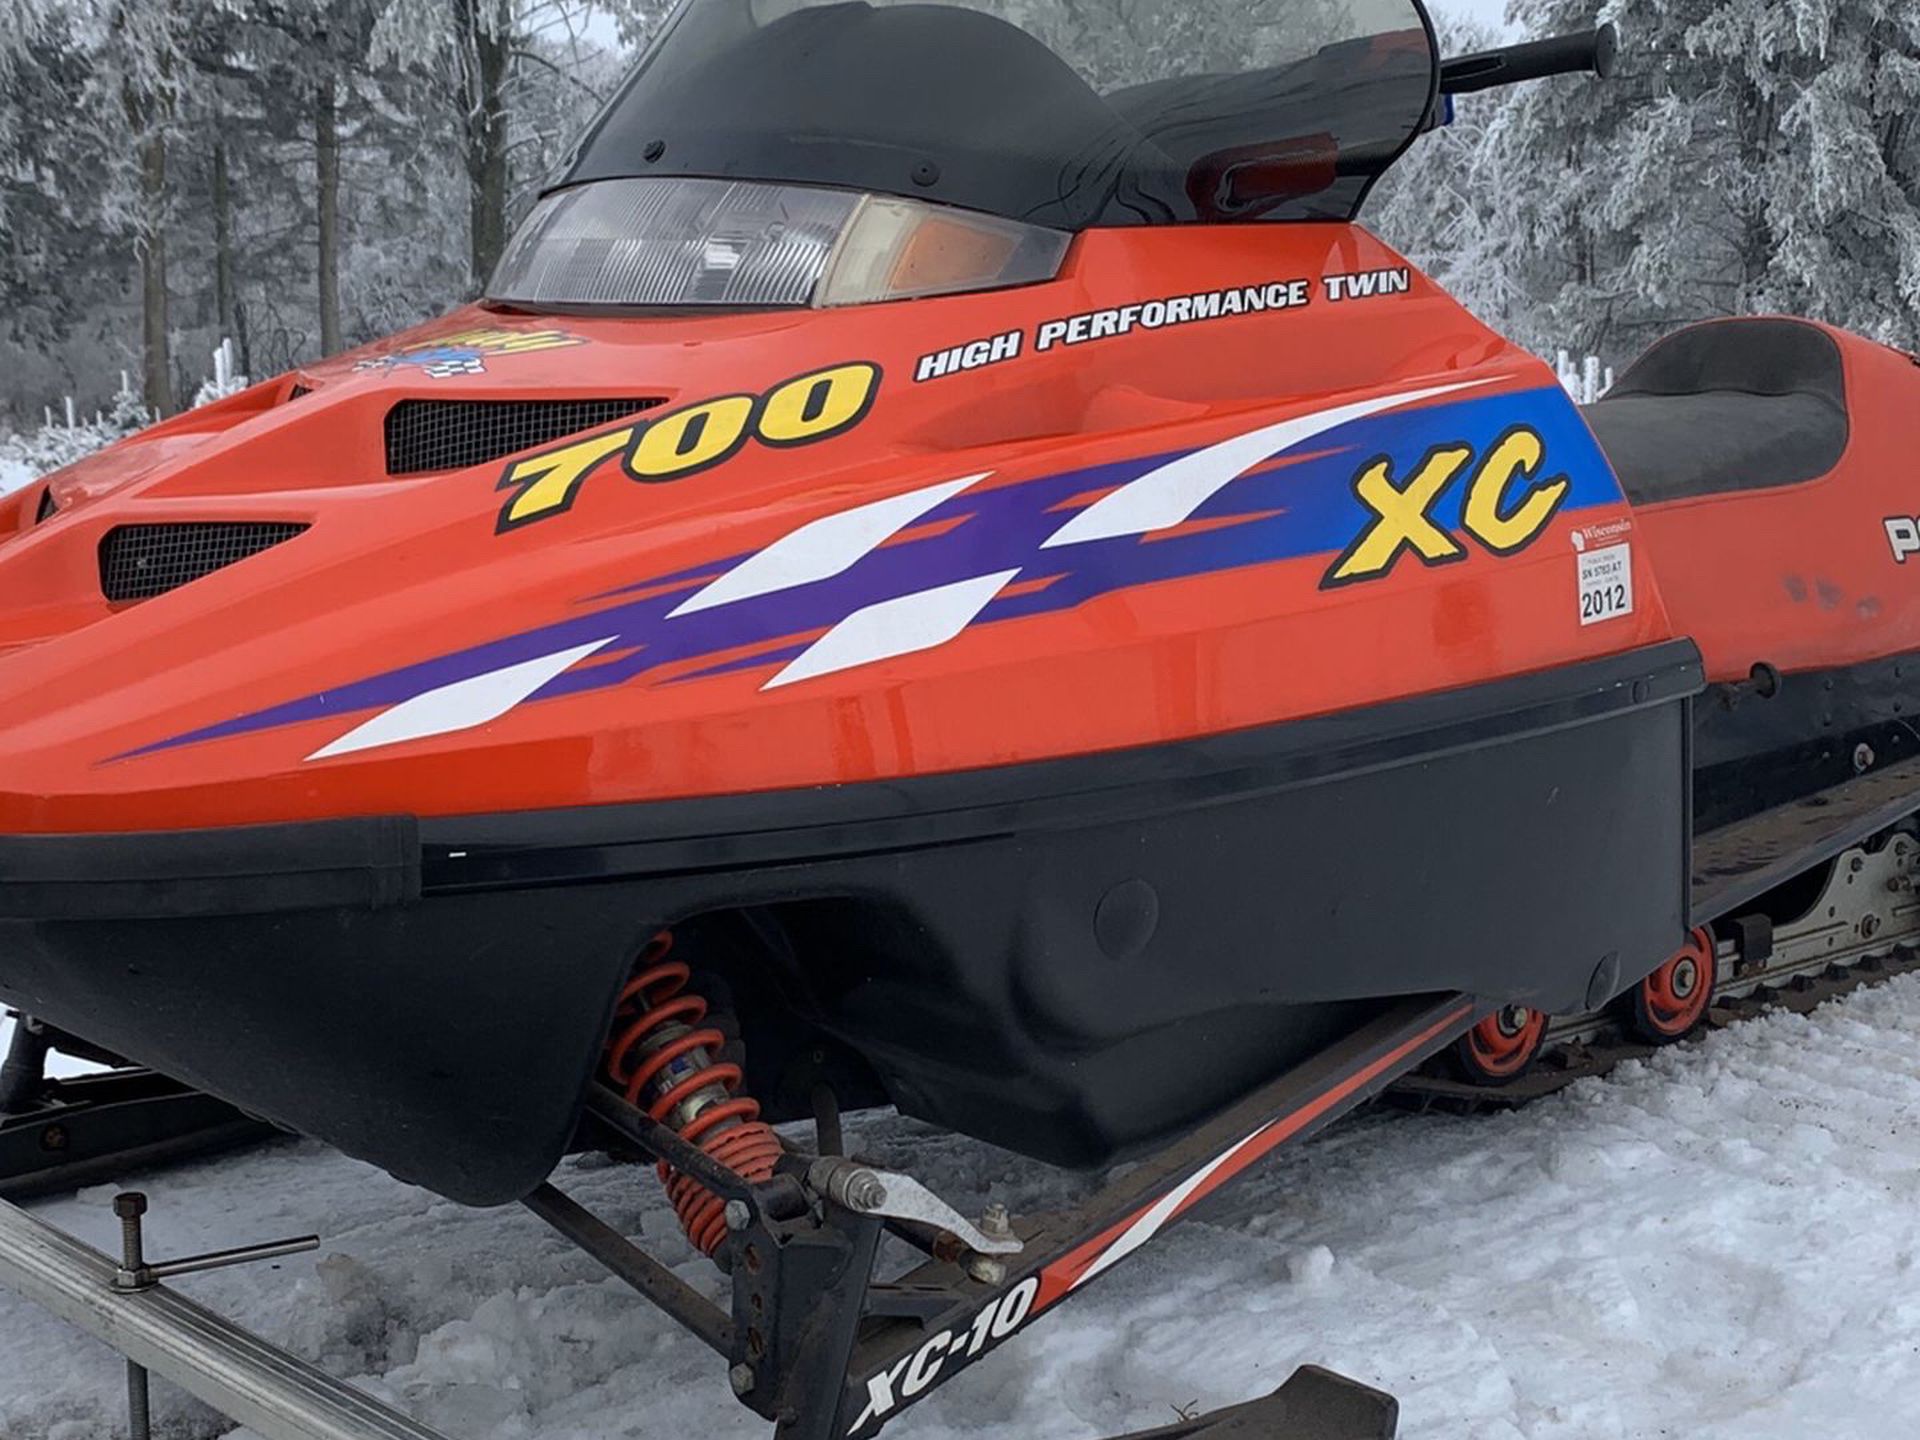 2000 Polaris XC 700 Snowmobile $1800